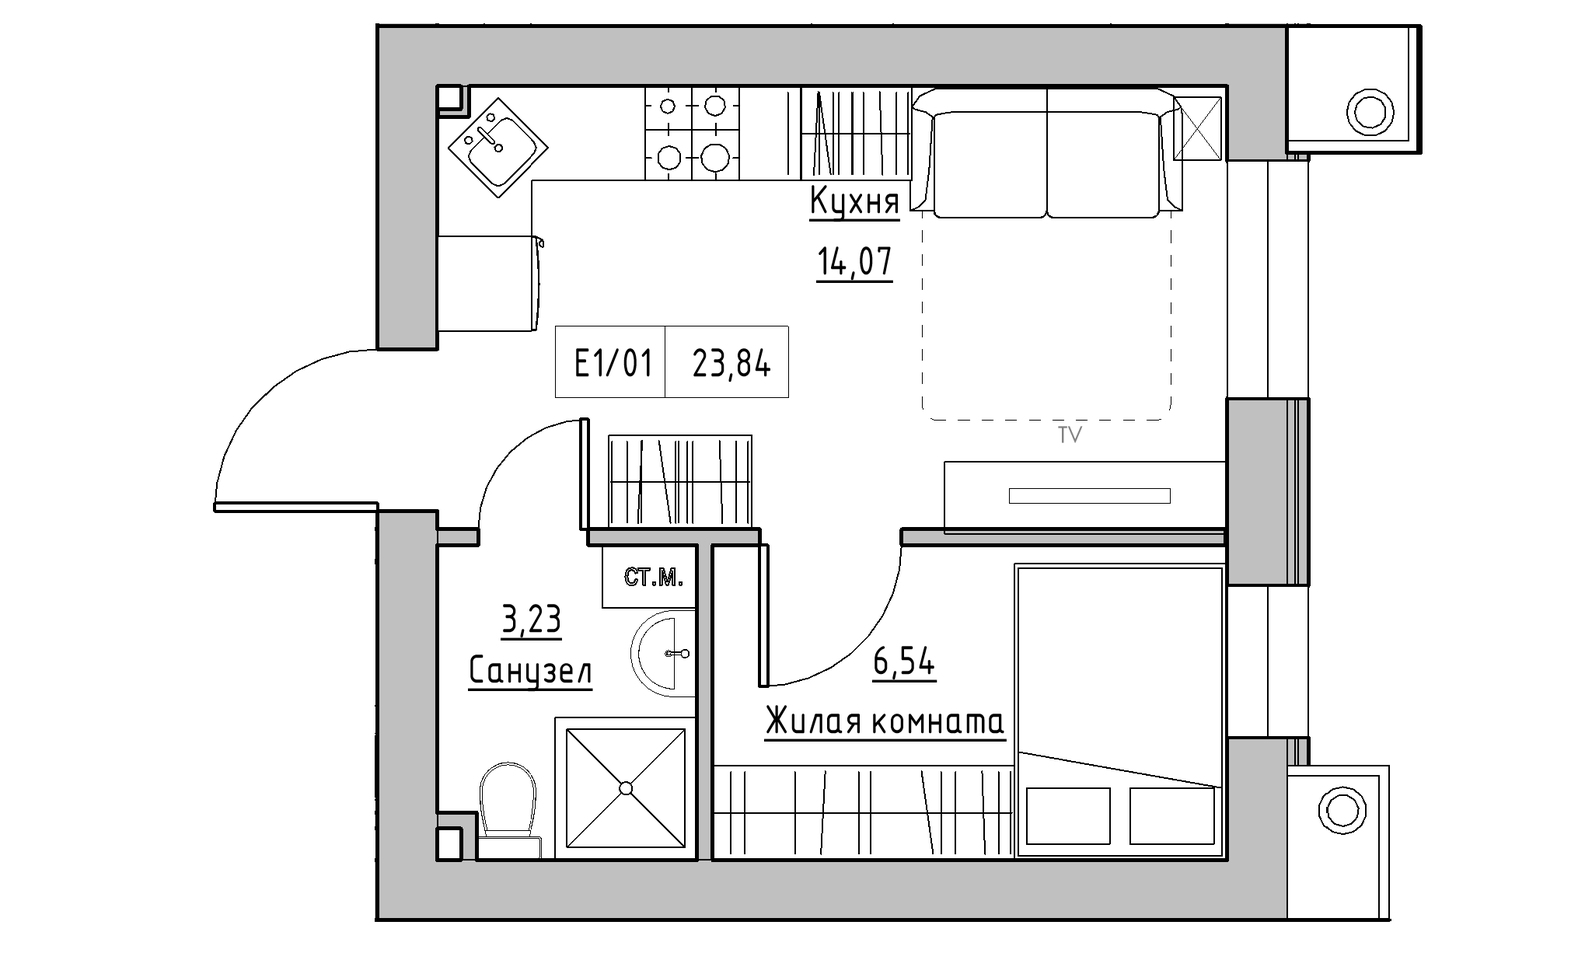 Планування 1-к квартира площею 23.84м2, KS-014-03/0011.